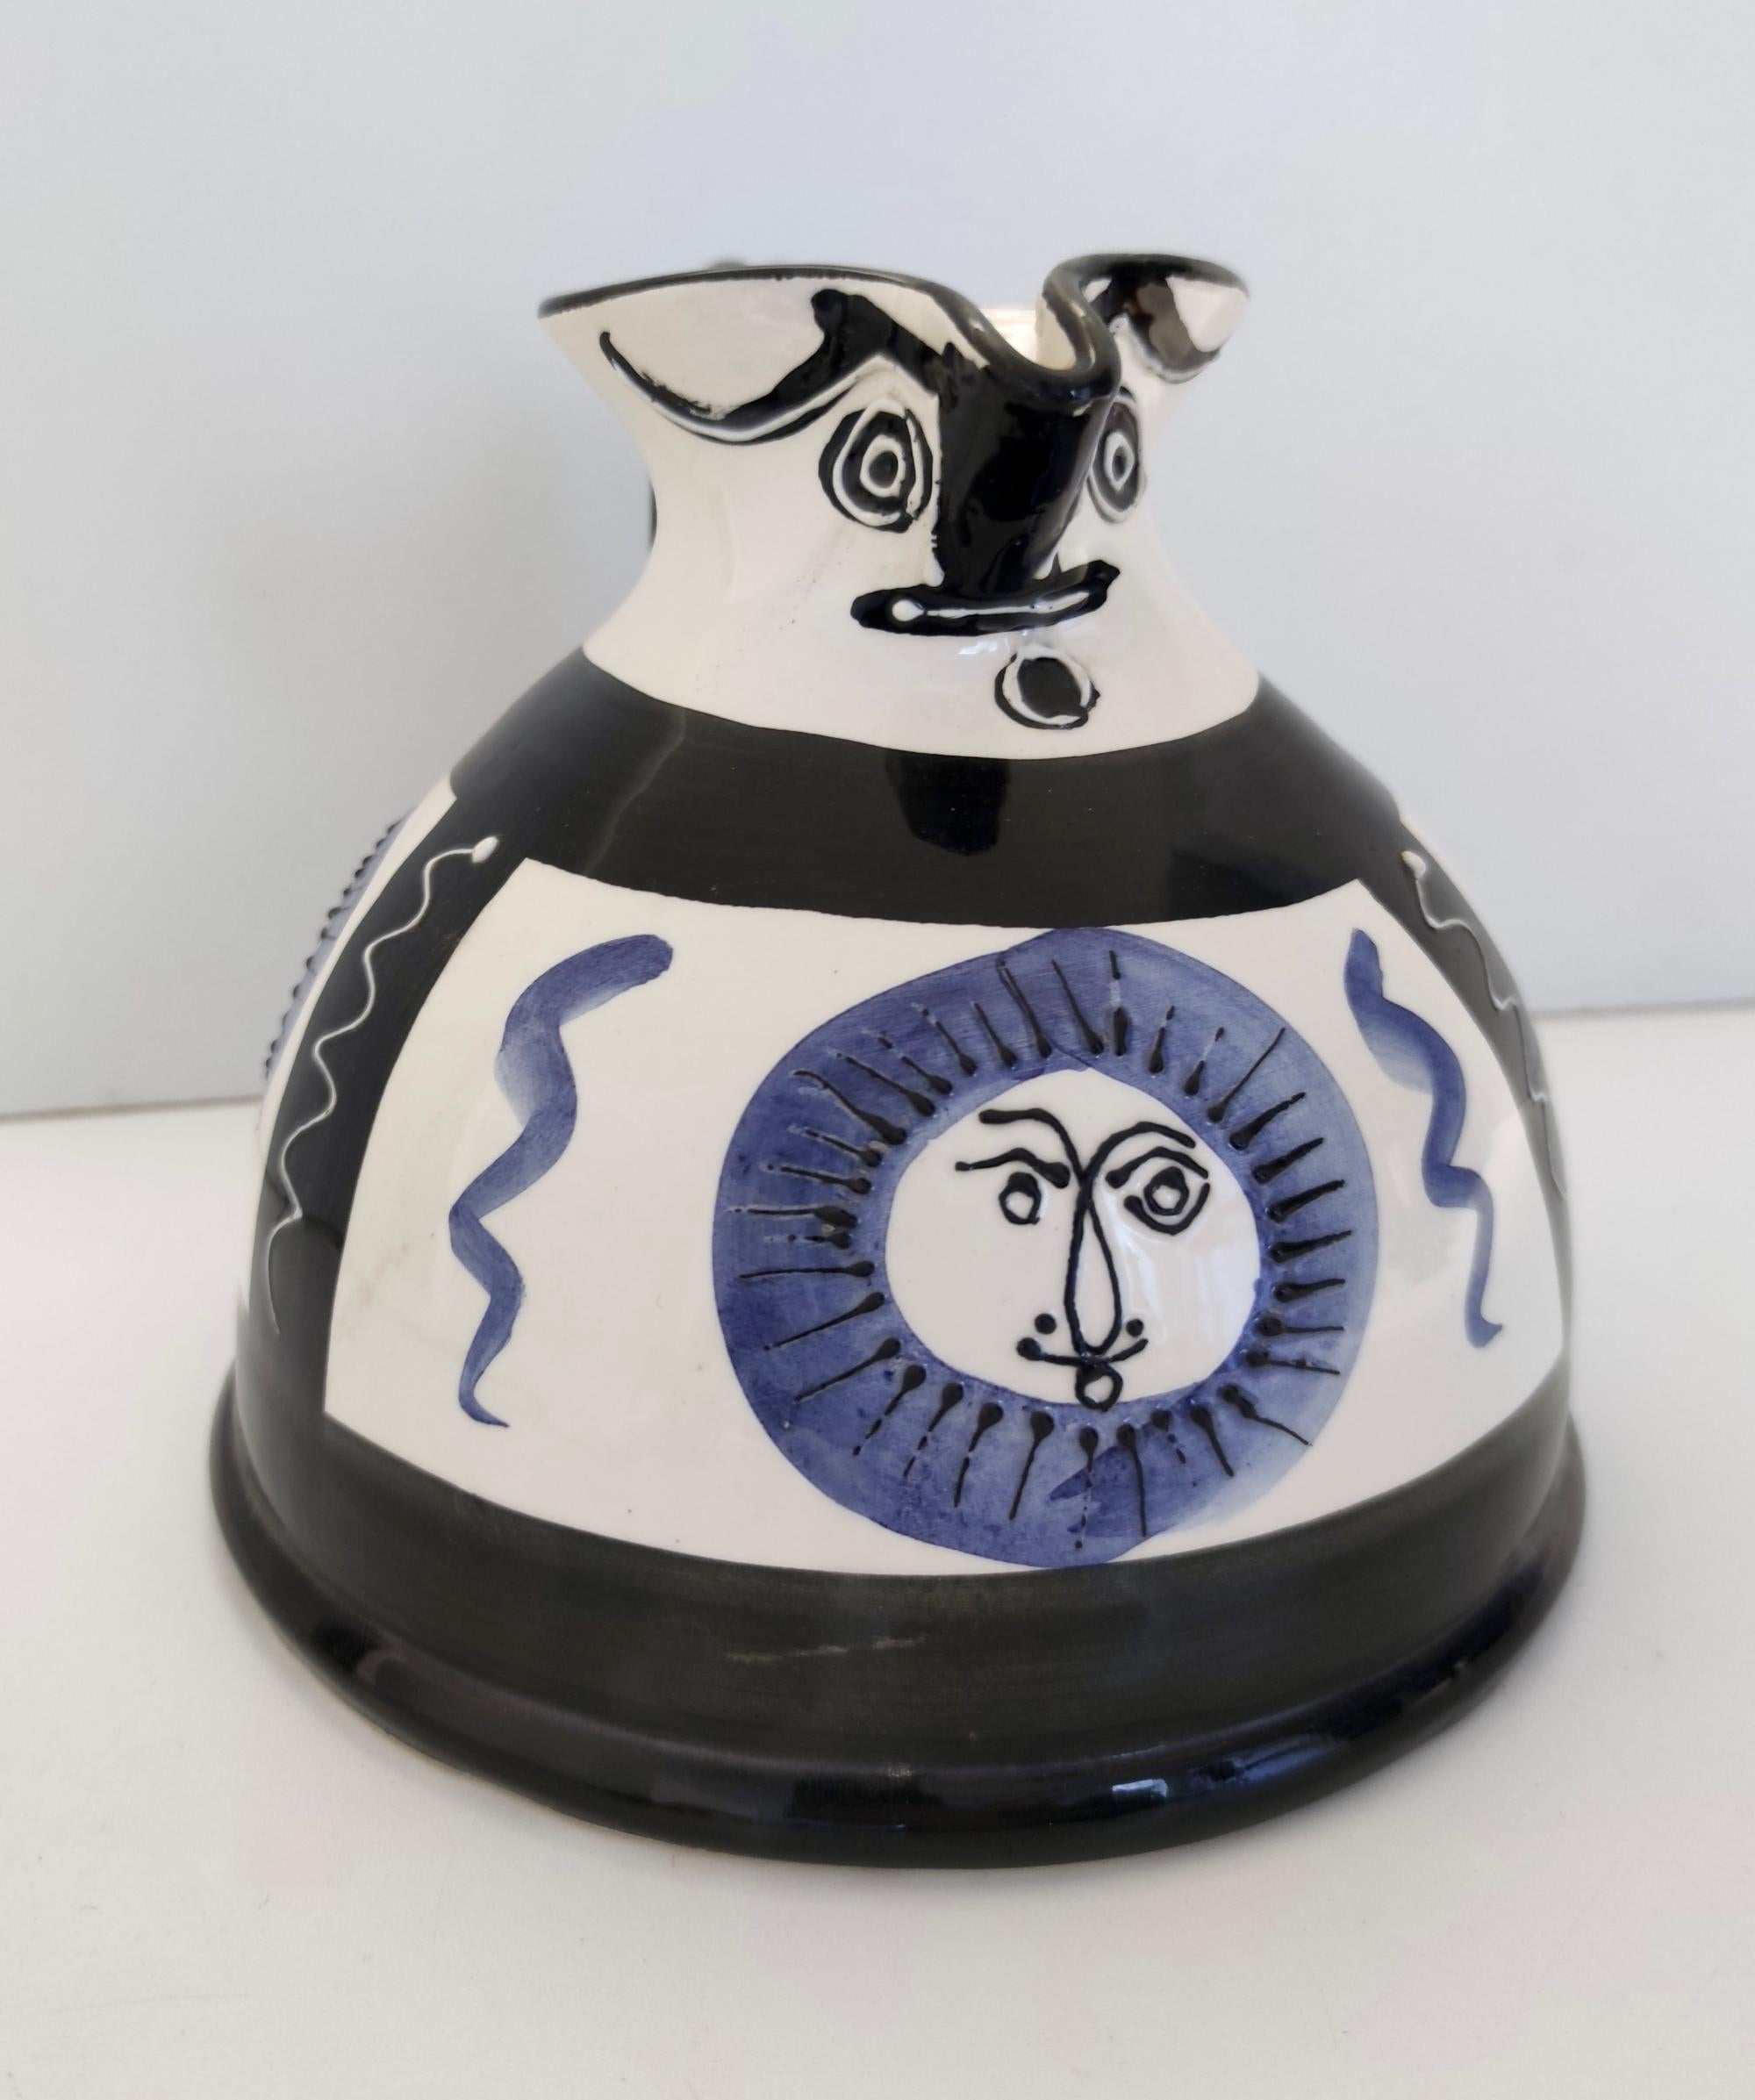 Hergestellt in Frankreich, 1960er - 1970er Jahre.
Sie besteht aus weißer, handbemalter Keramik mit blauen und schwarzen Motiven, die an den Stil von Pablo Picasso erinnern.
Da es sich um einen Vintage-Artikel handelt, kann er leichte Gebrauchsspuren